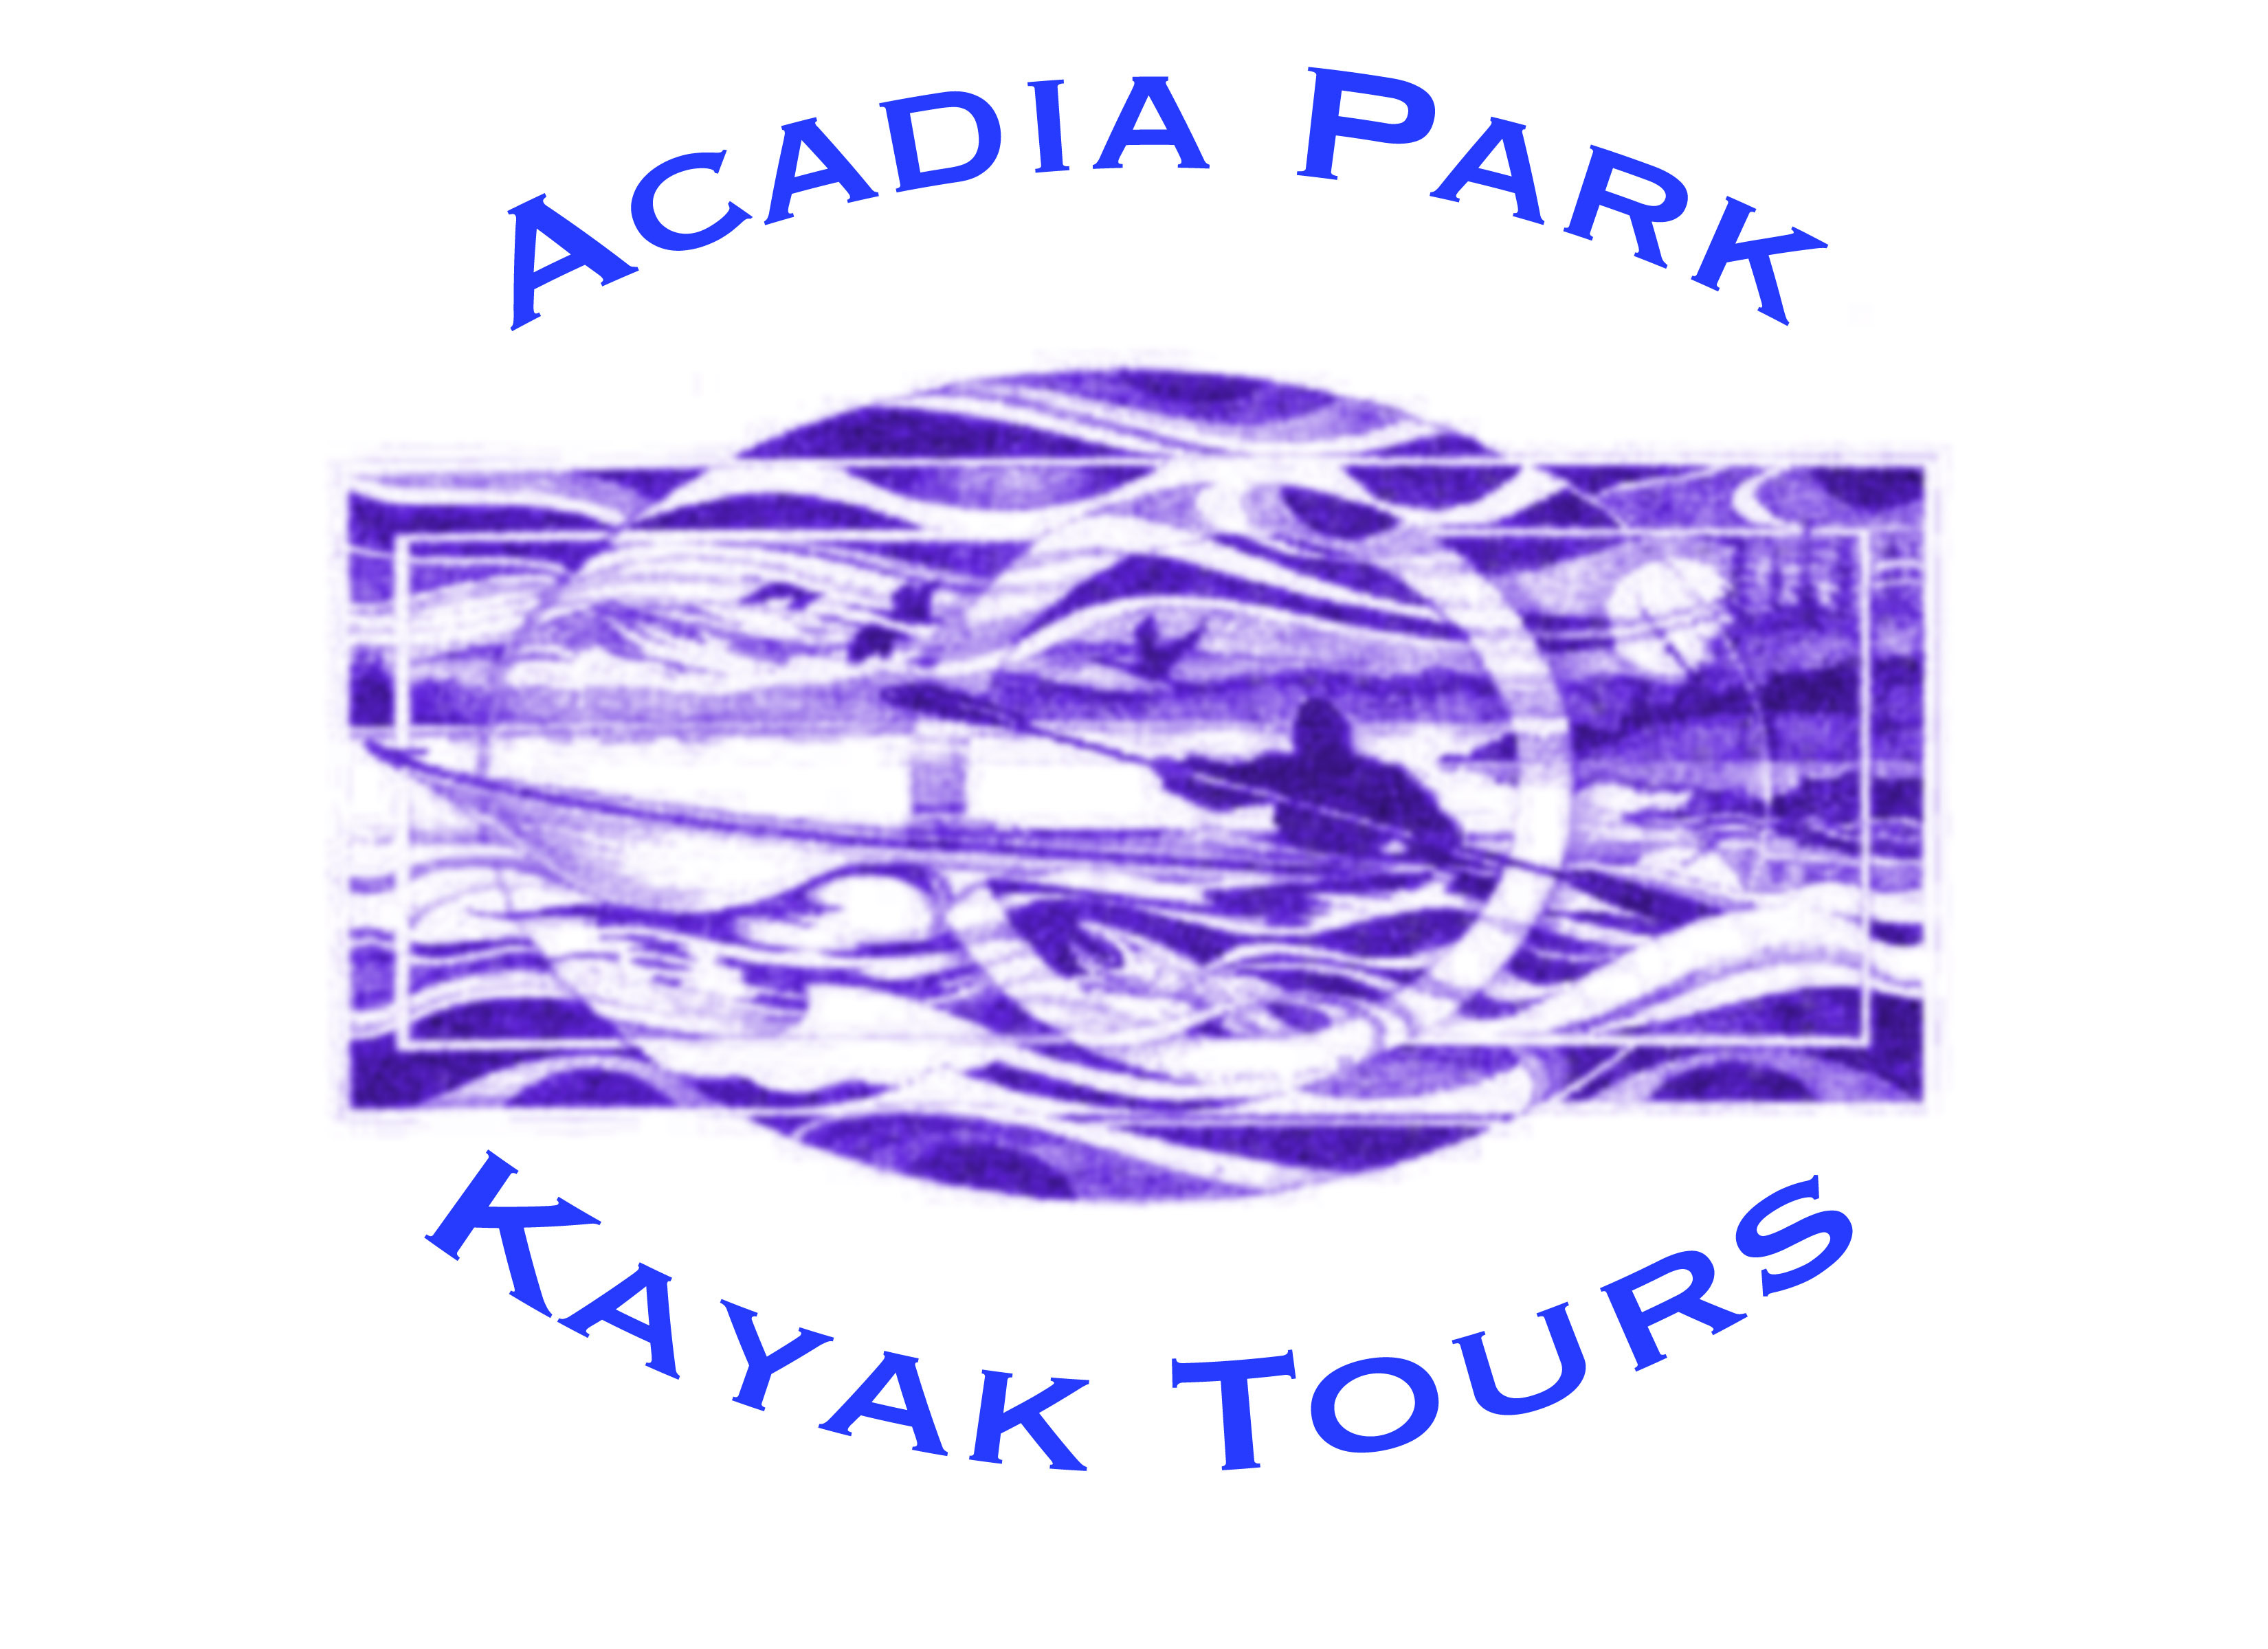 Acadia Park Kayak Tours